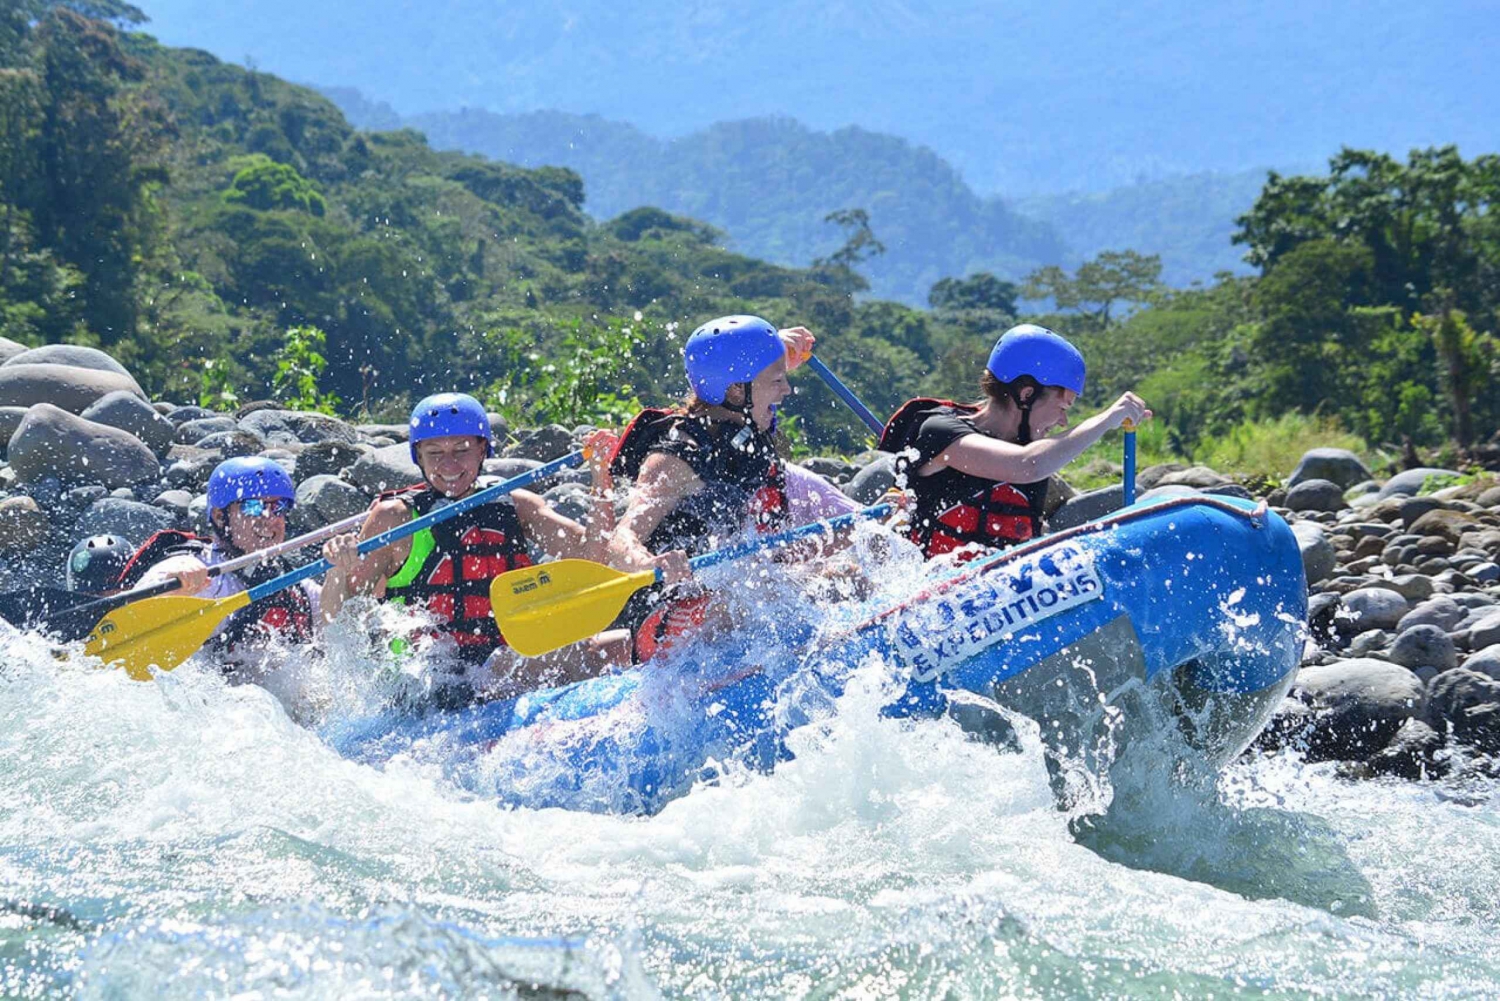 La Fortuna/Arenal : Rafting de classe III et IV sur la rivière Sarapiquí